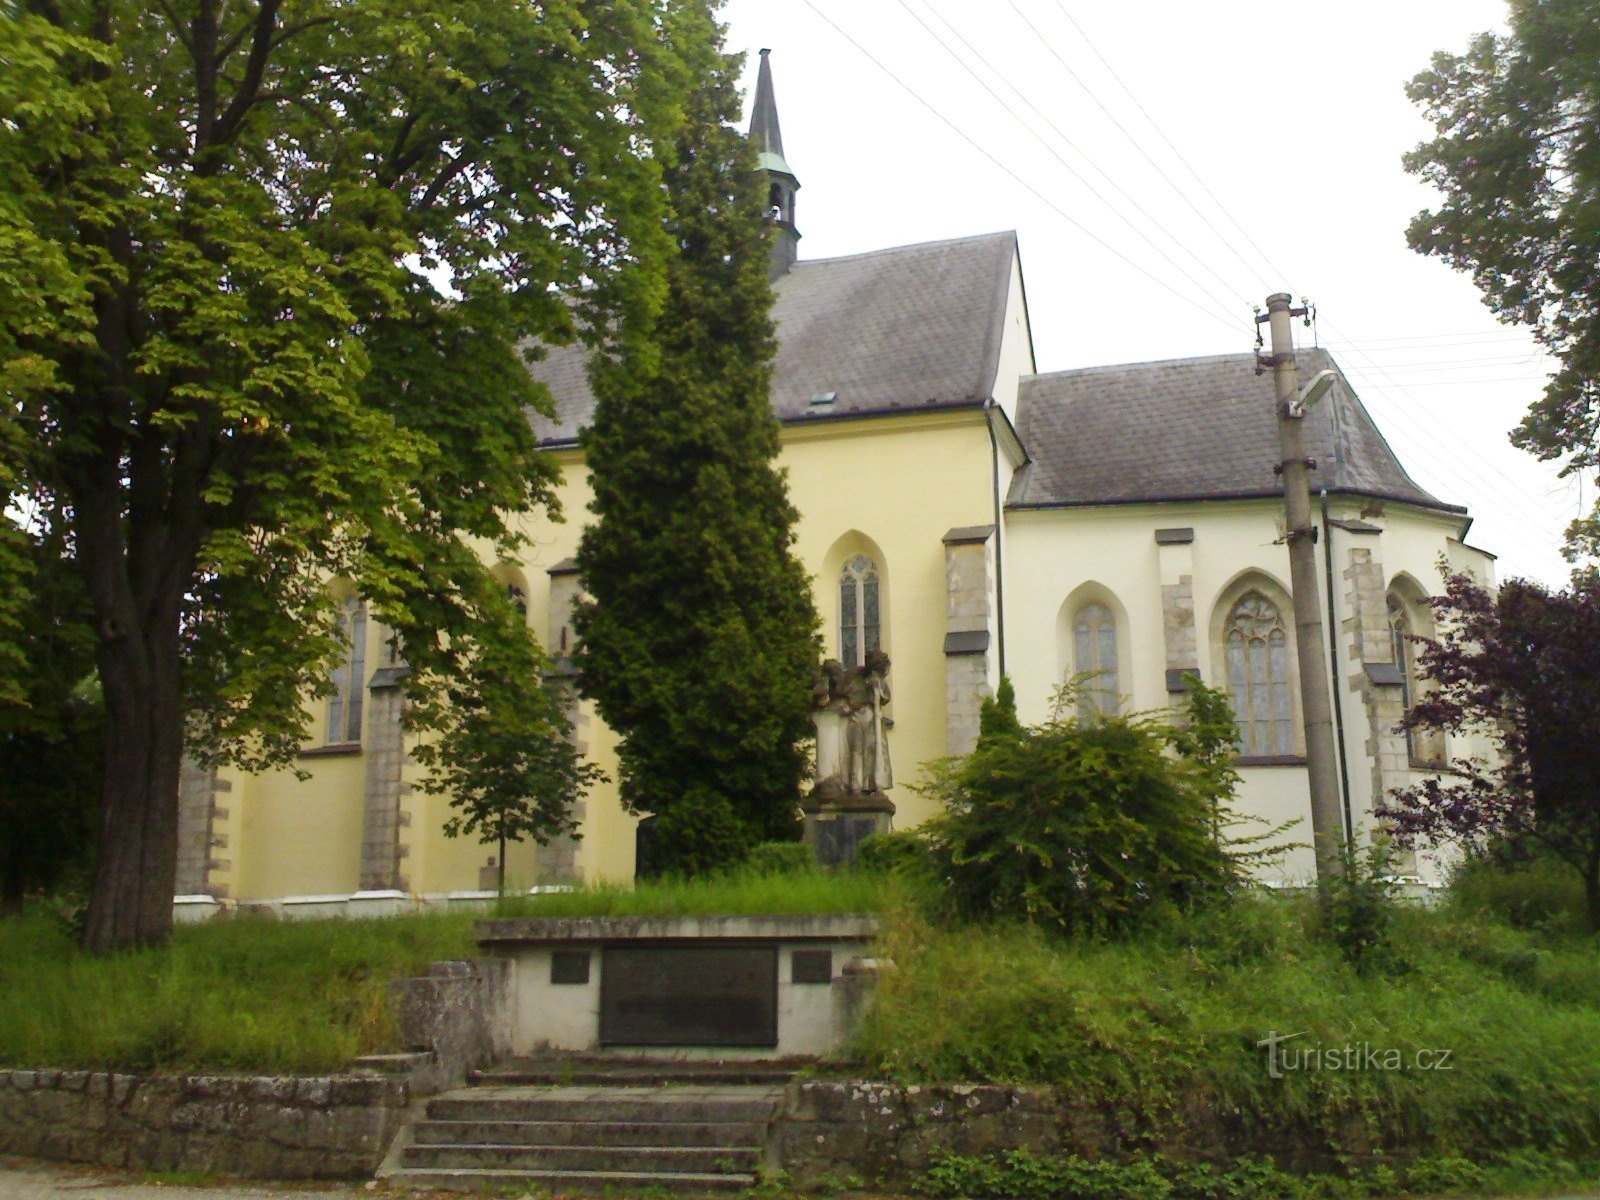 Rovensko pod Troskami - igreja de St. Venceslau